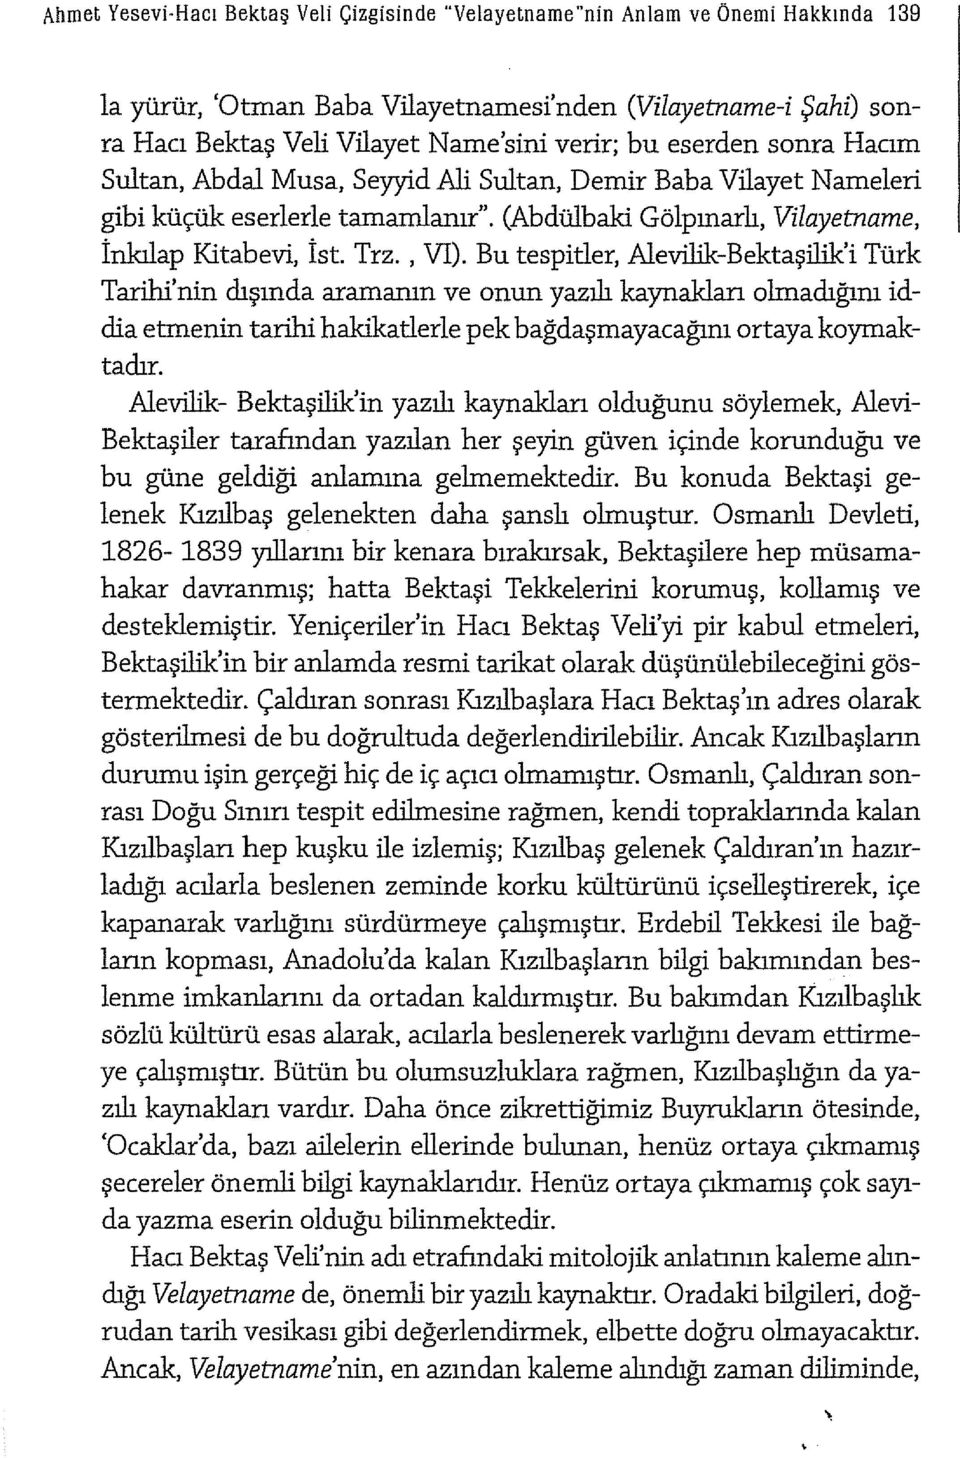 Bu tespitler, Alevilik-Bektaşilik'i Türk Tarihi'nin dışında aramanın ve onun yazılı kaynaklan olmadığım iddia etmenin tarihi hakikatlerle pek bağdaşmayacağım ortaya koymaktadır.